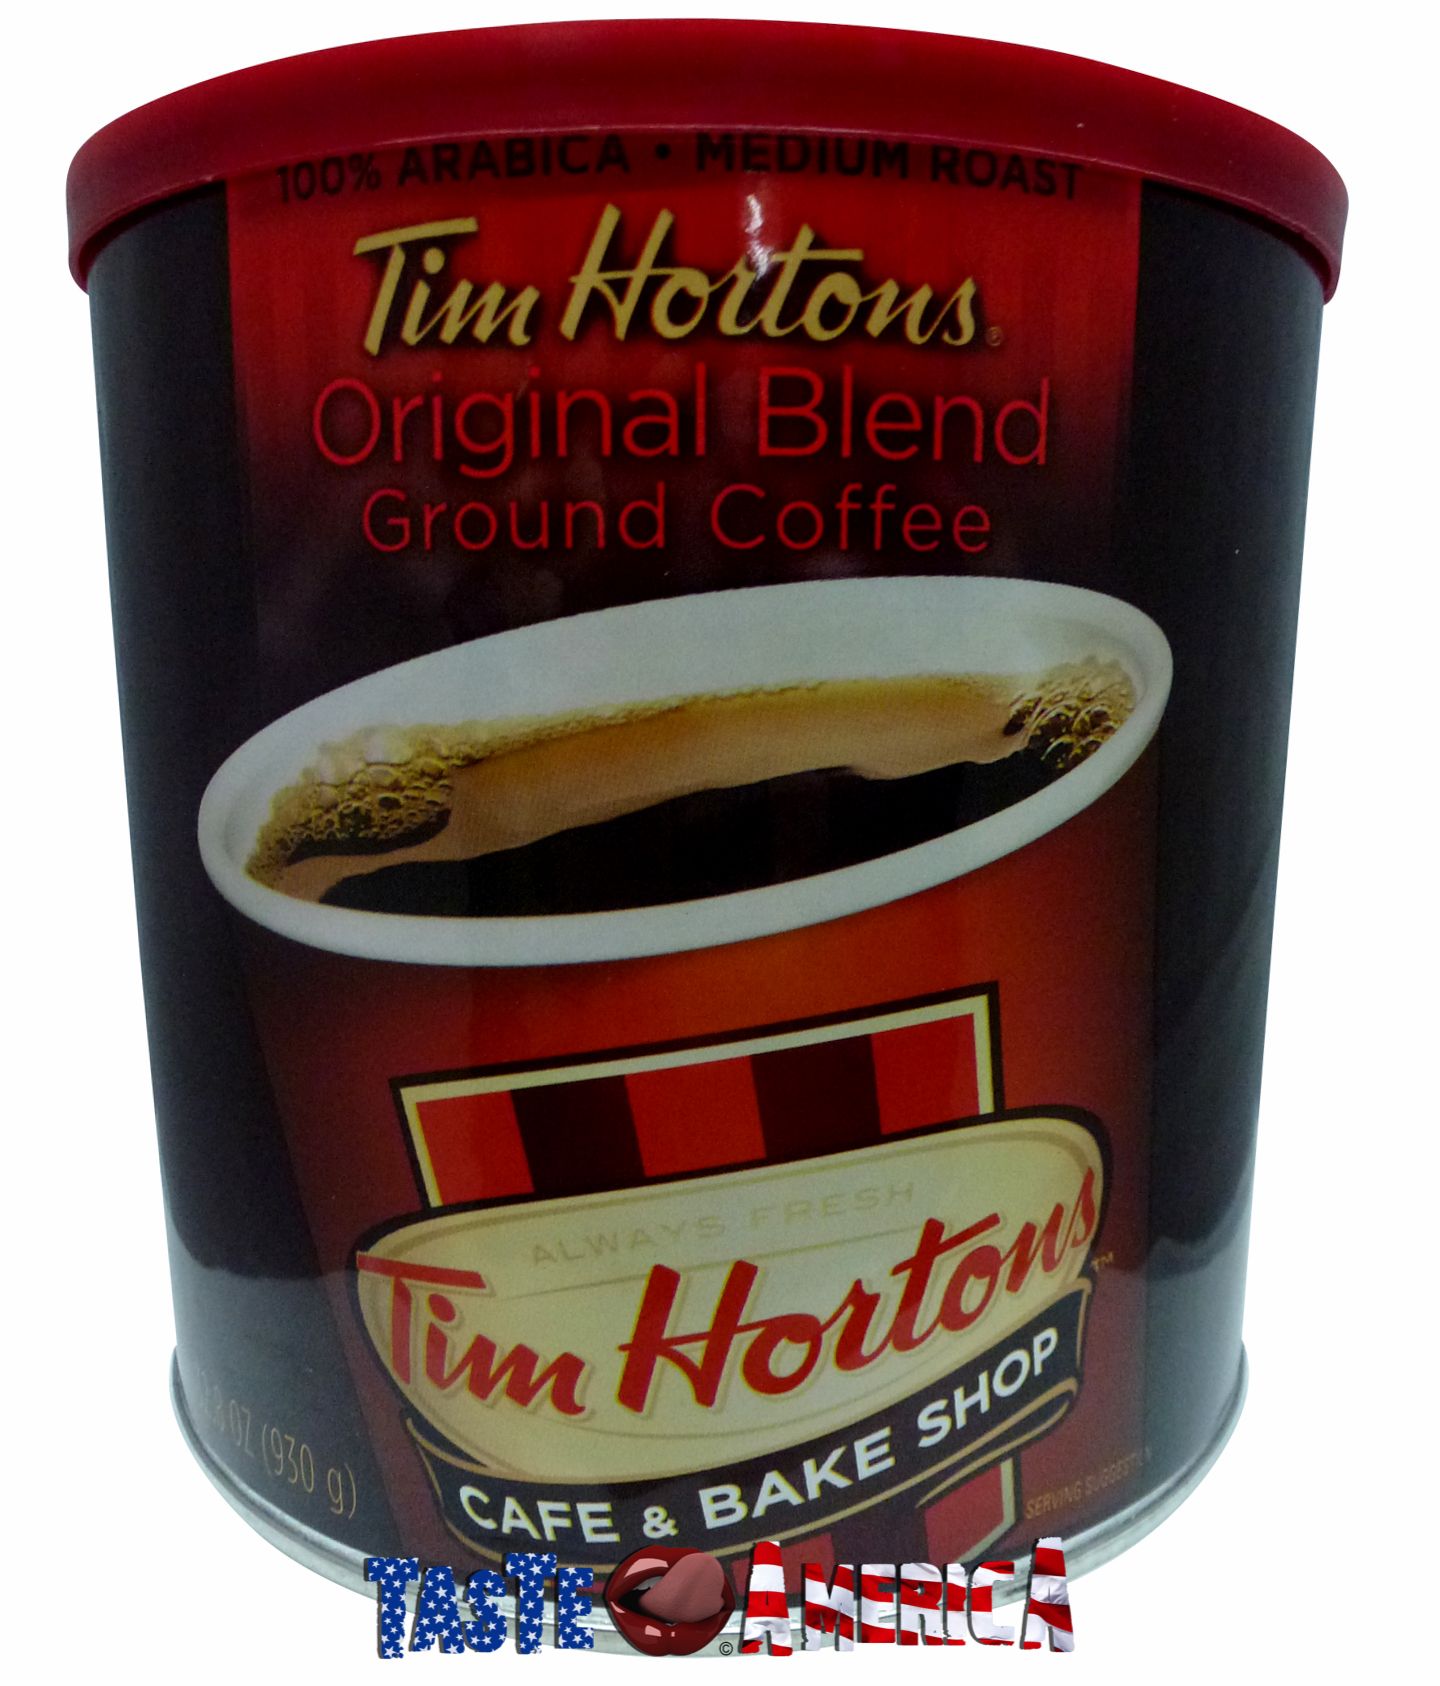  Tim Hortons Original Blend, Medium Roast Ground